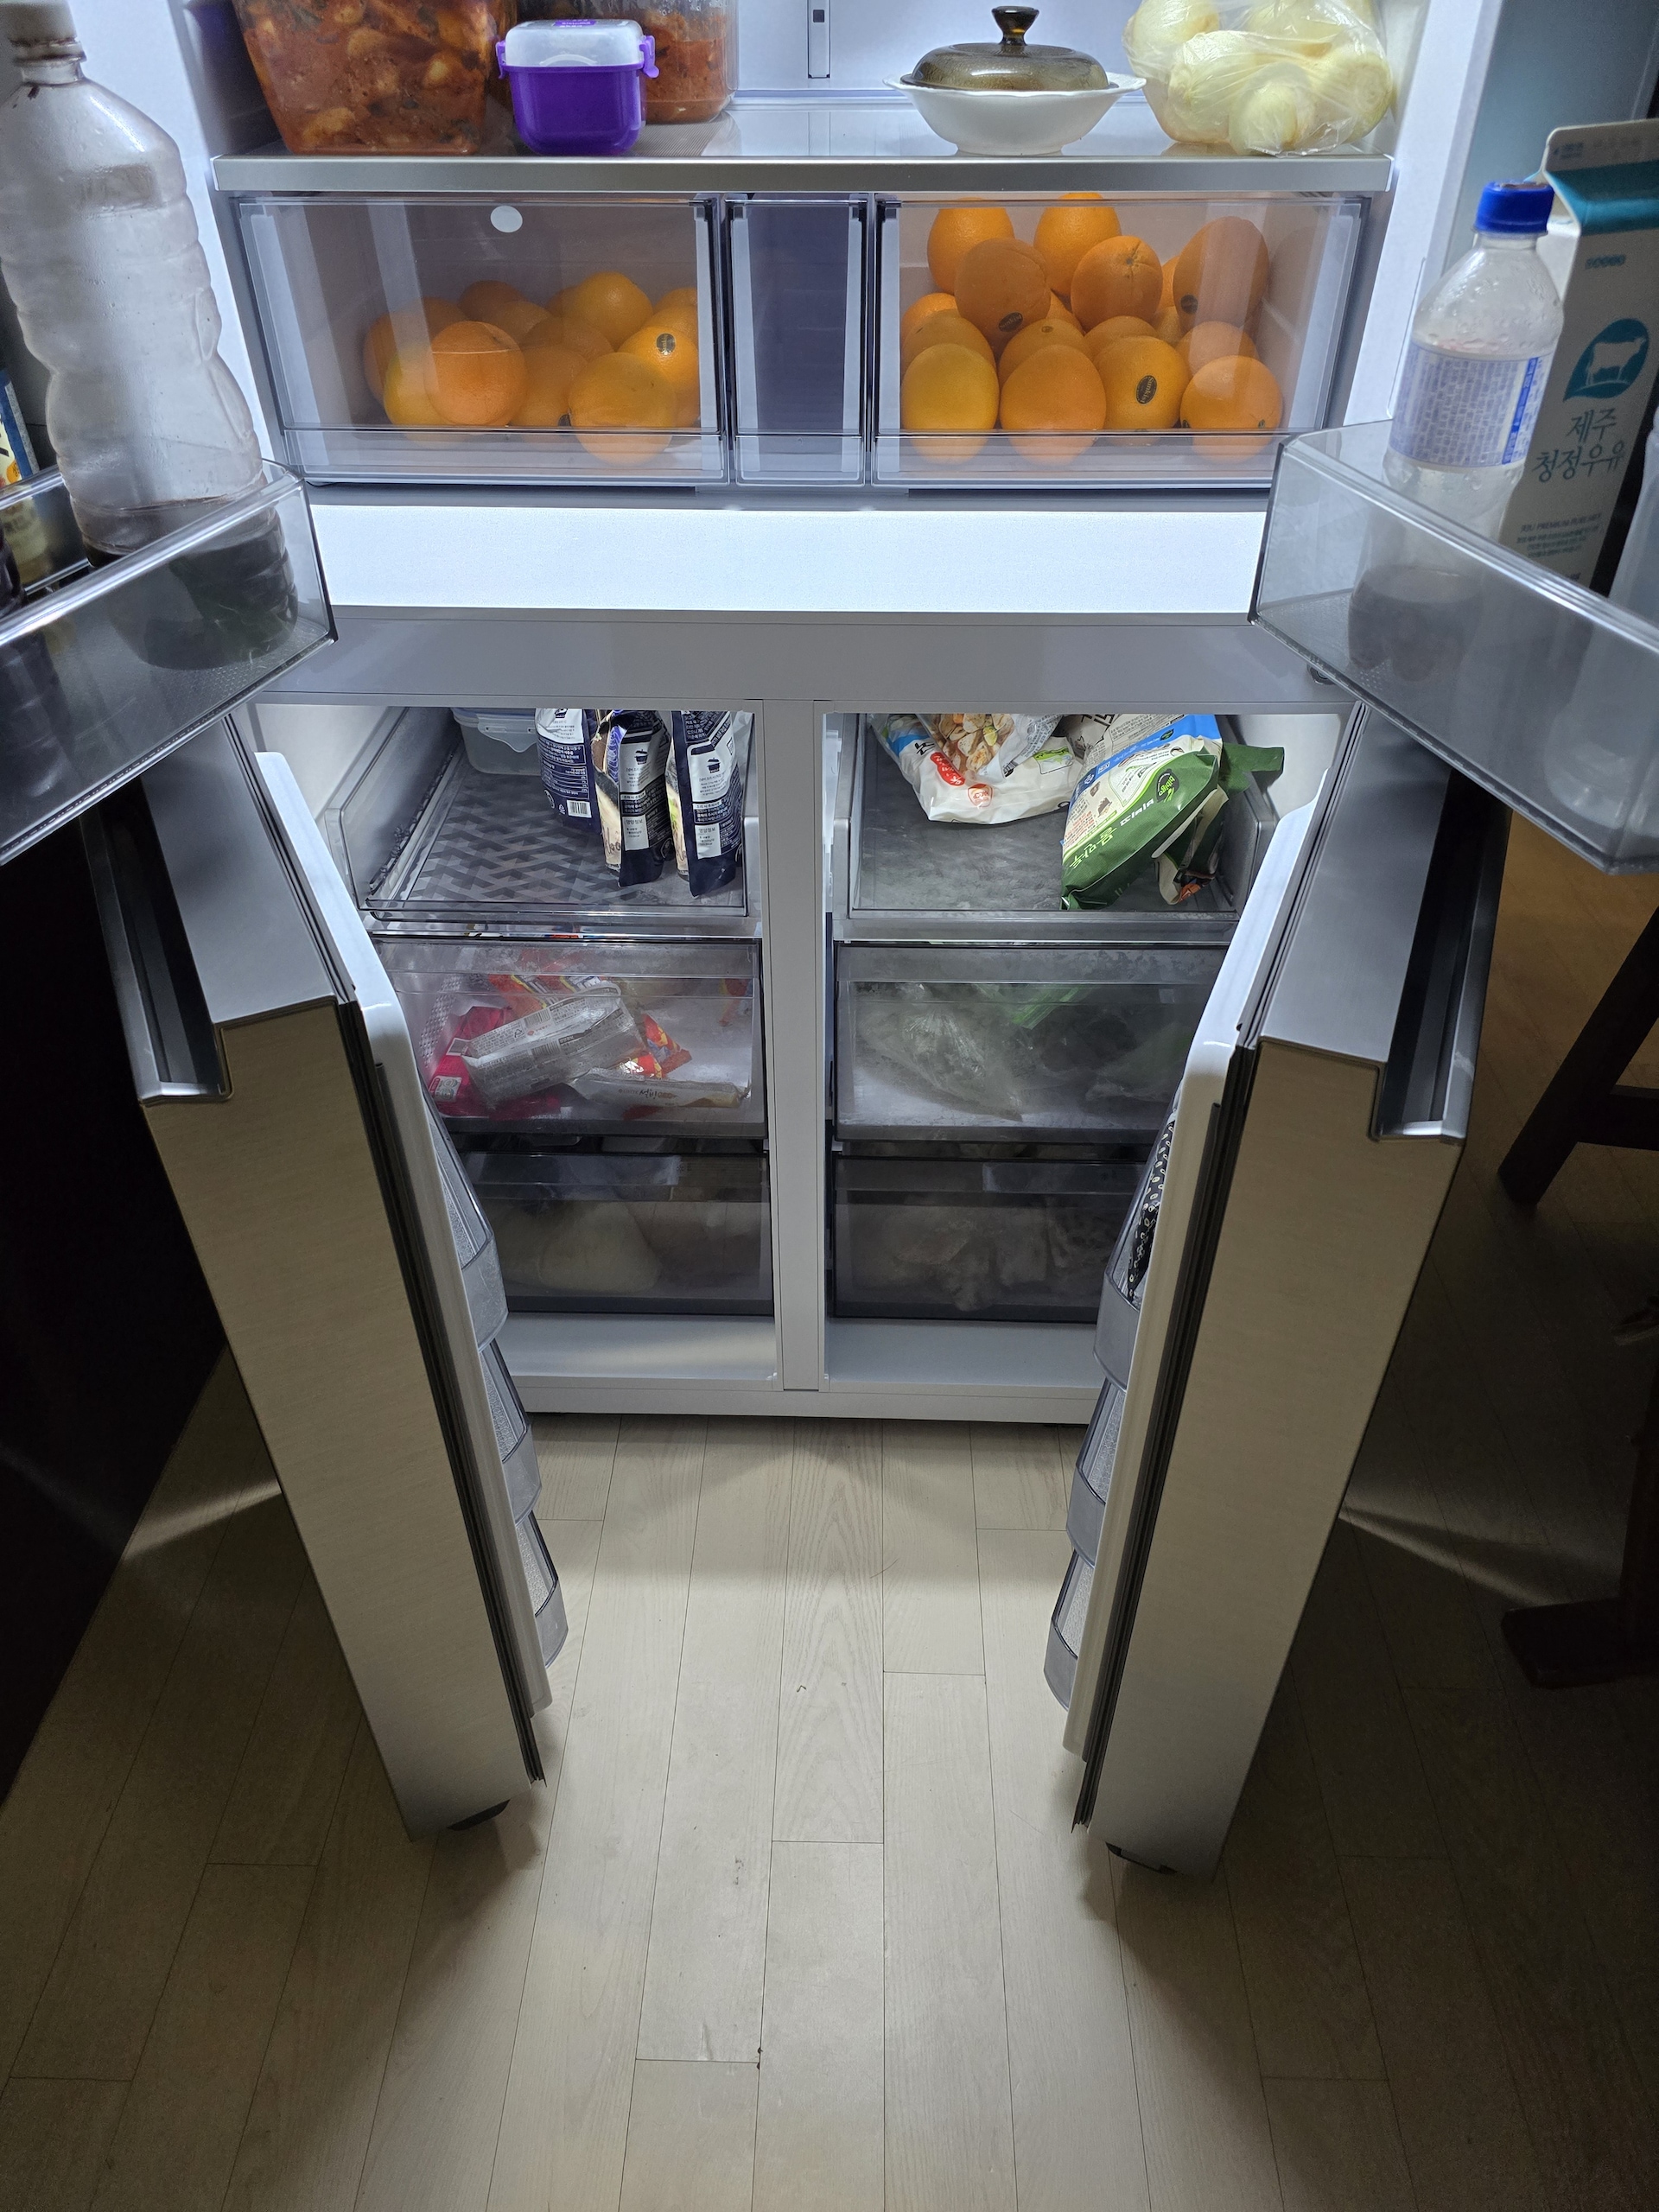 2012년도에 구매한 지펠 냉장고가 고장...